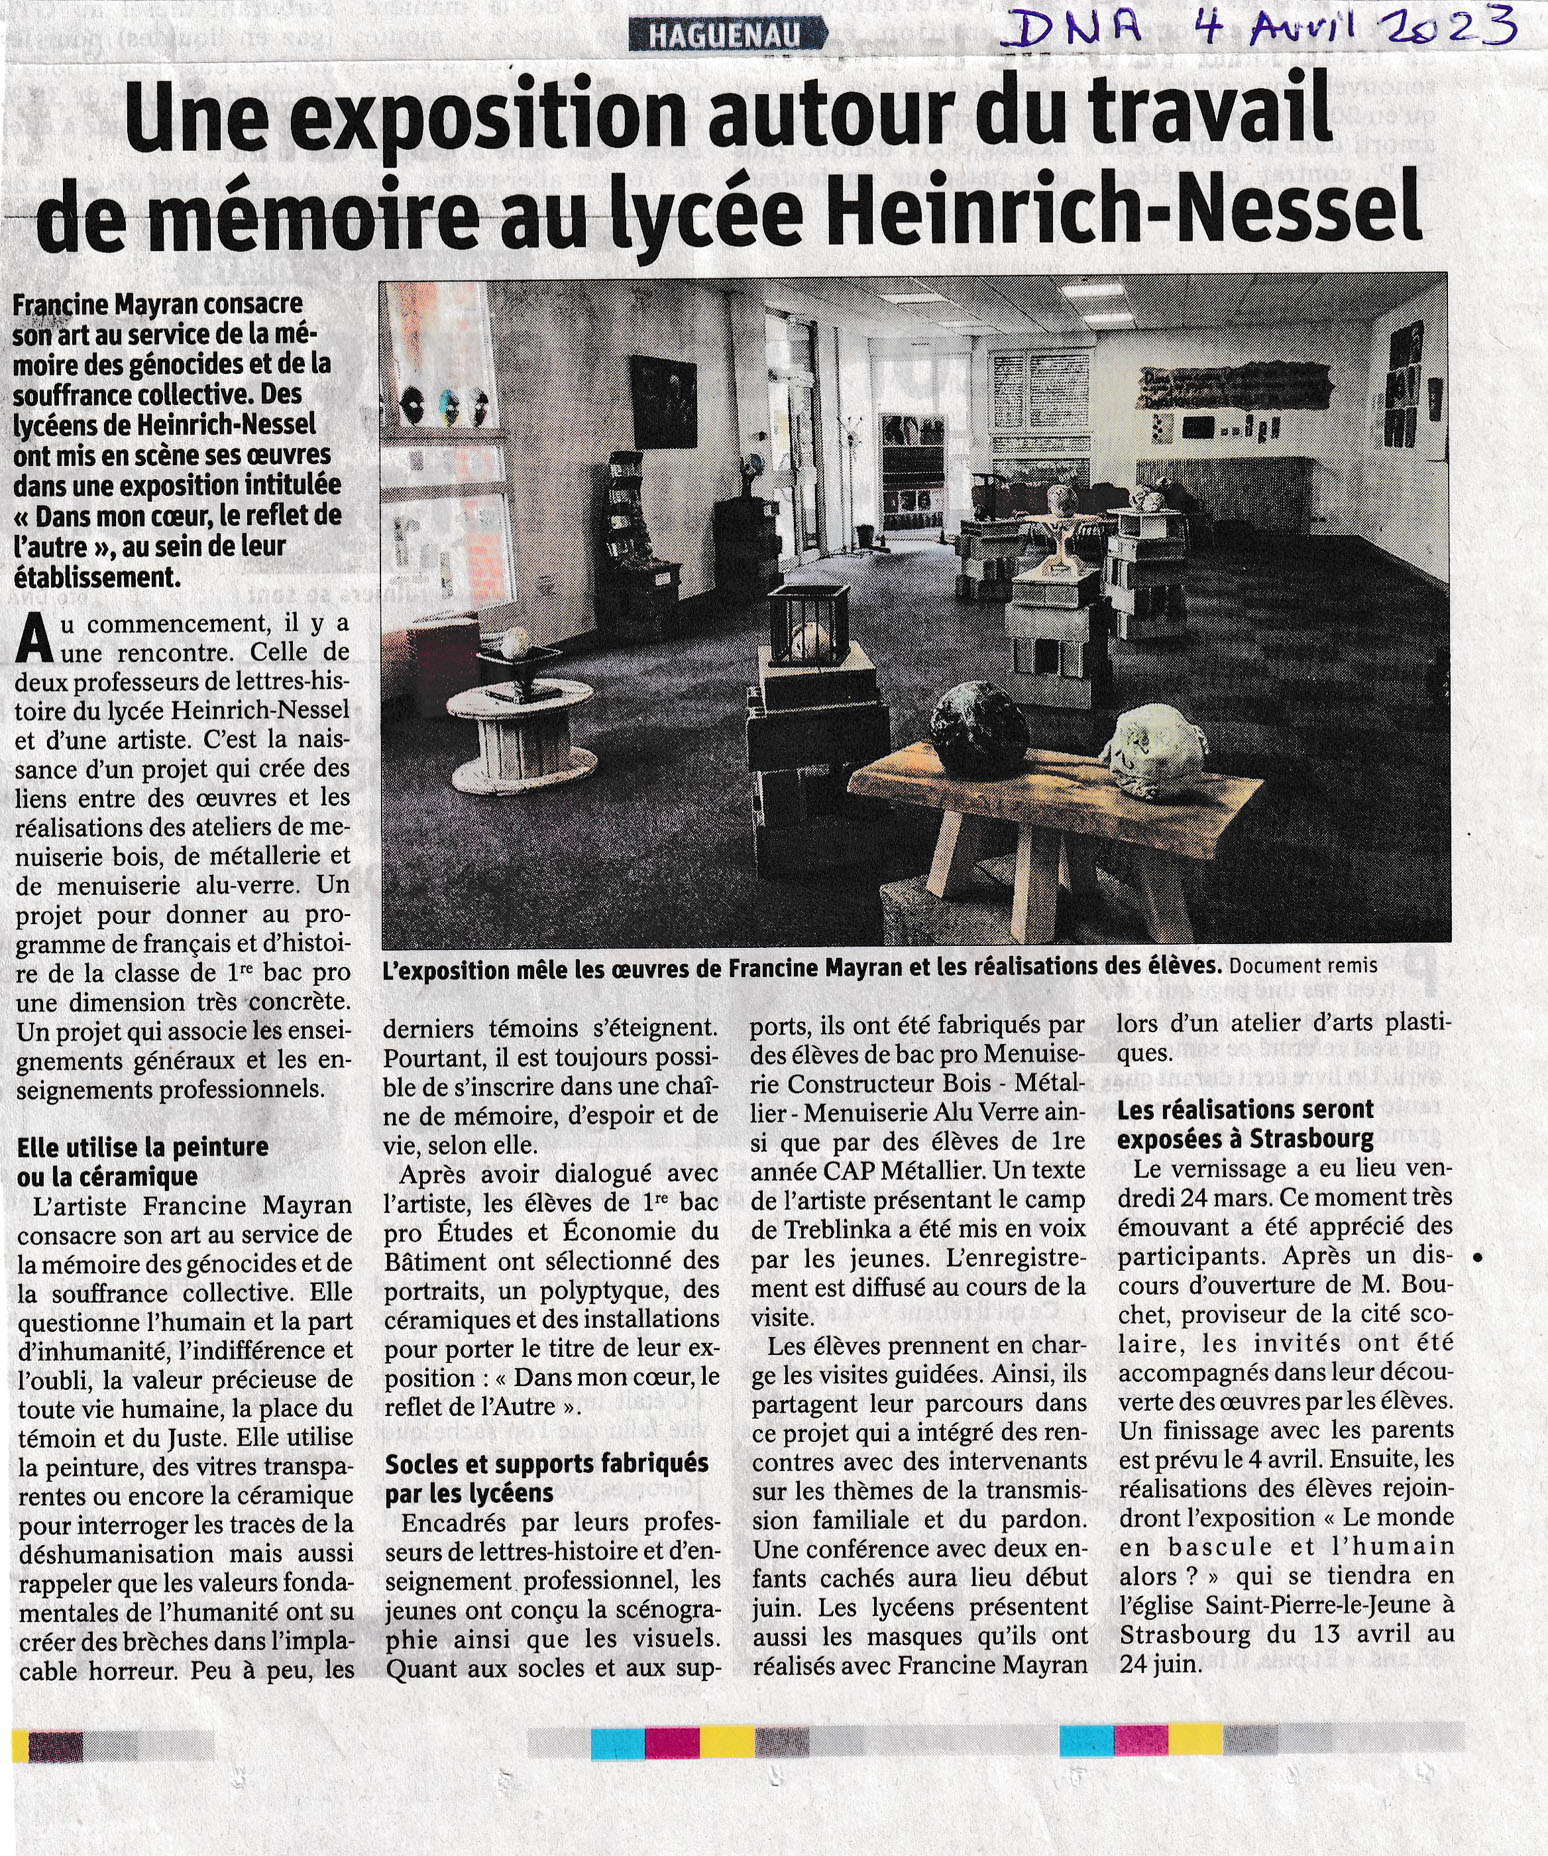 Dernières Nouvelles d'Alsace. 04/04/2023